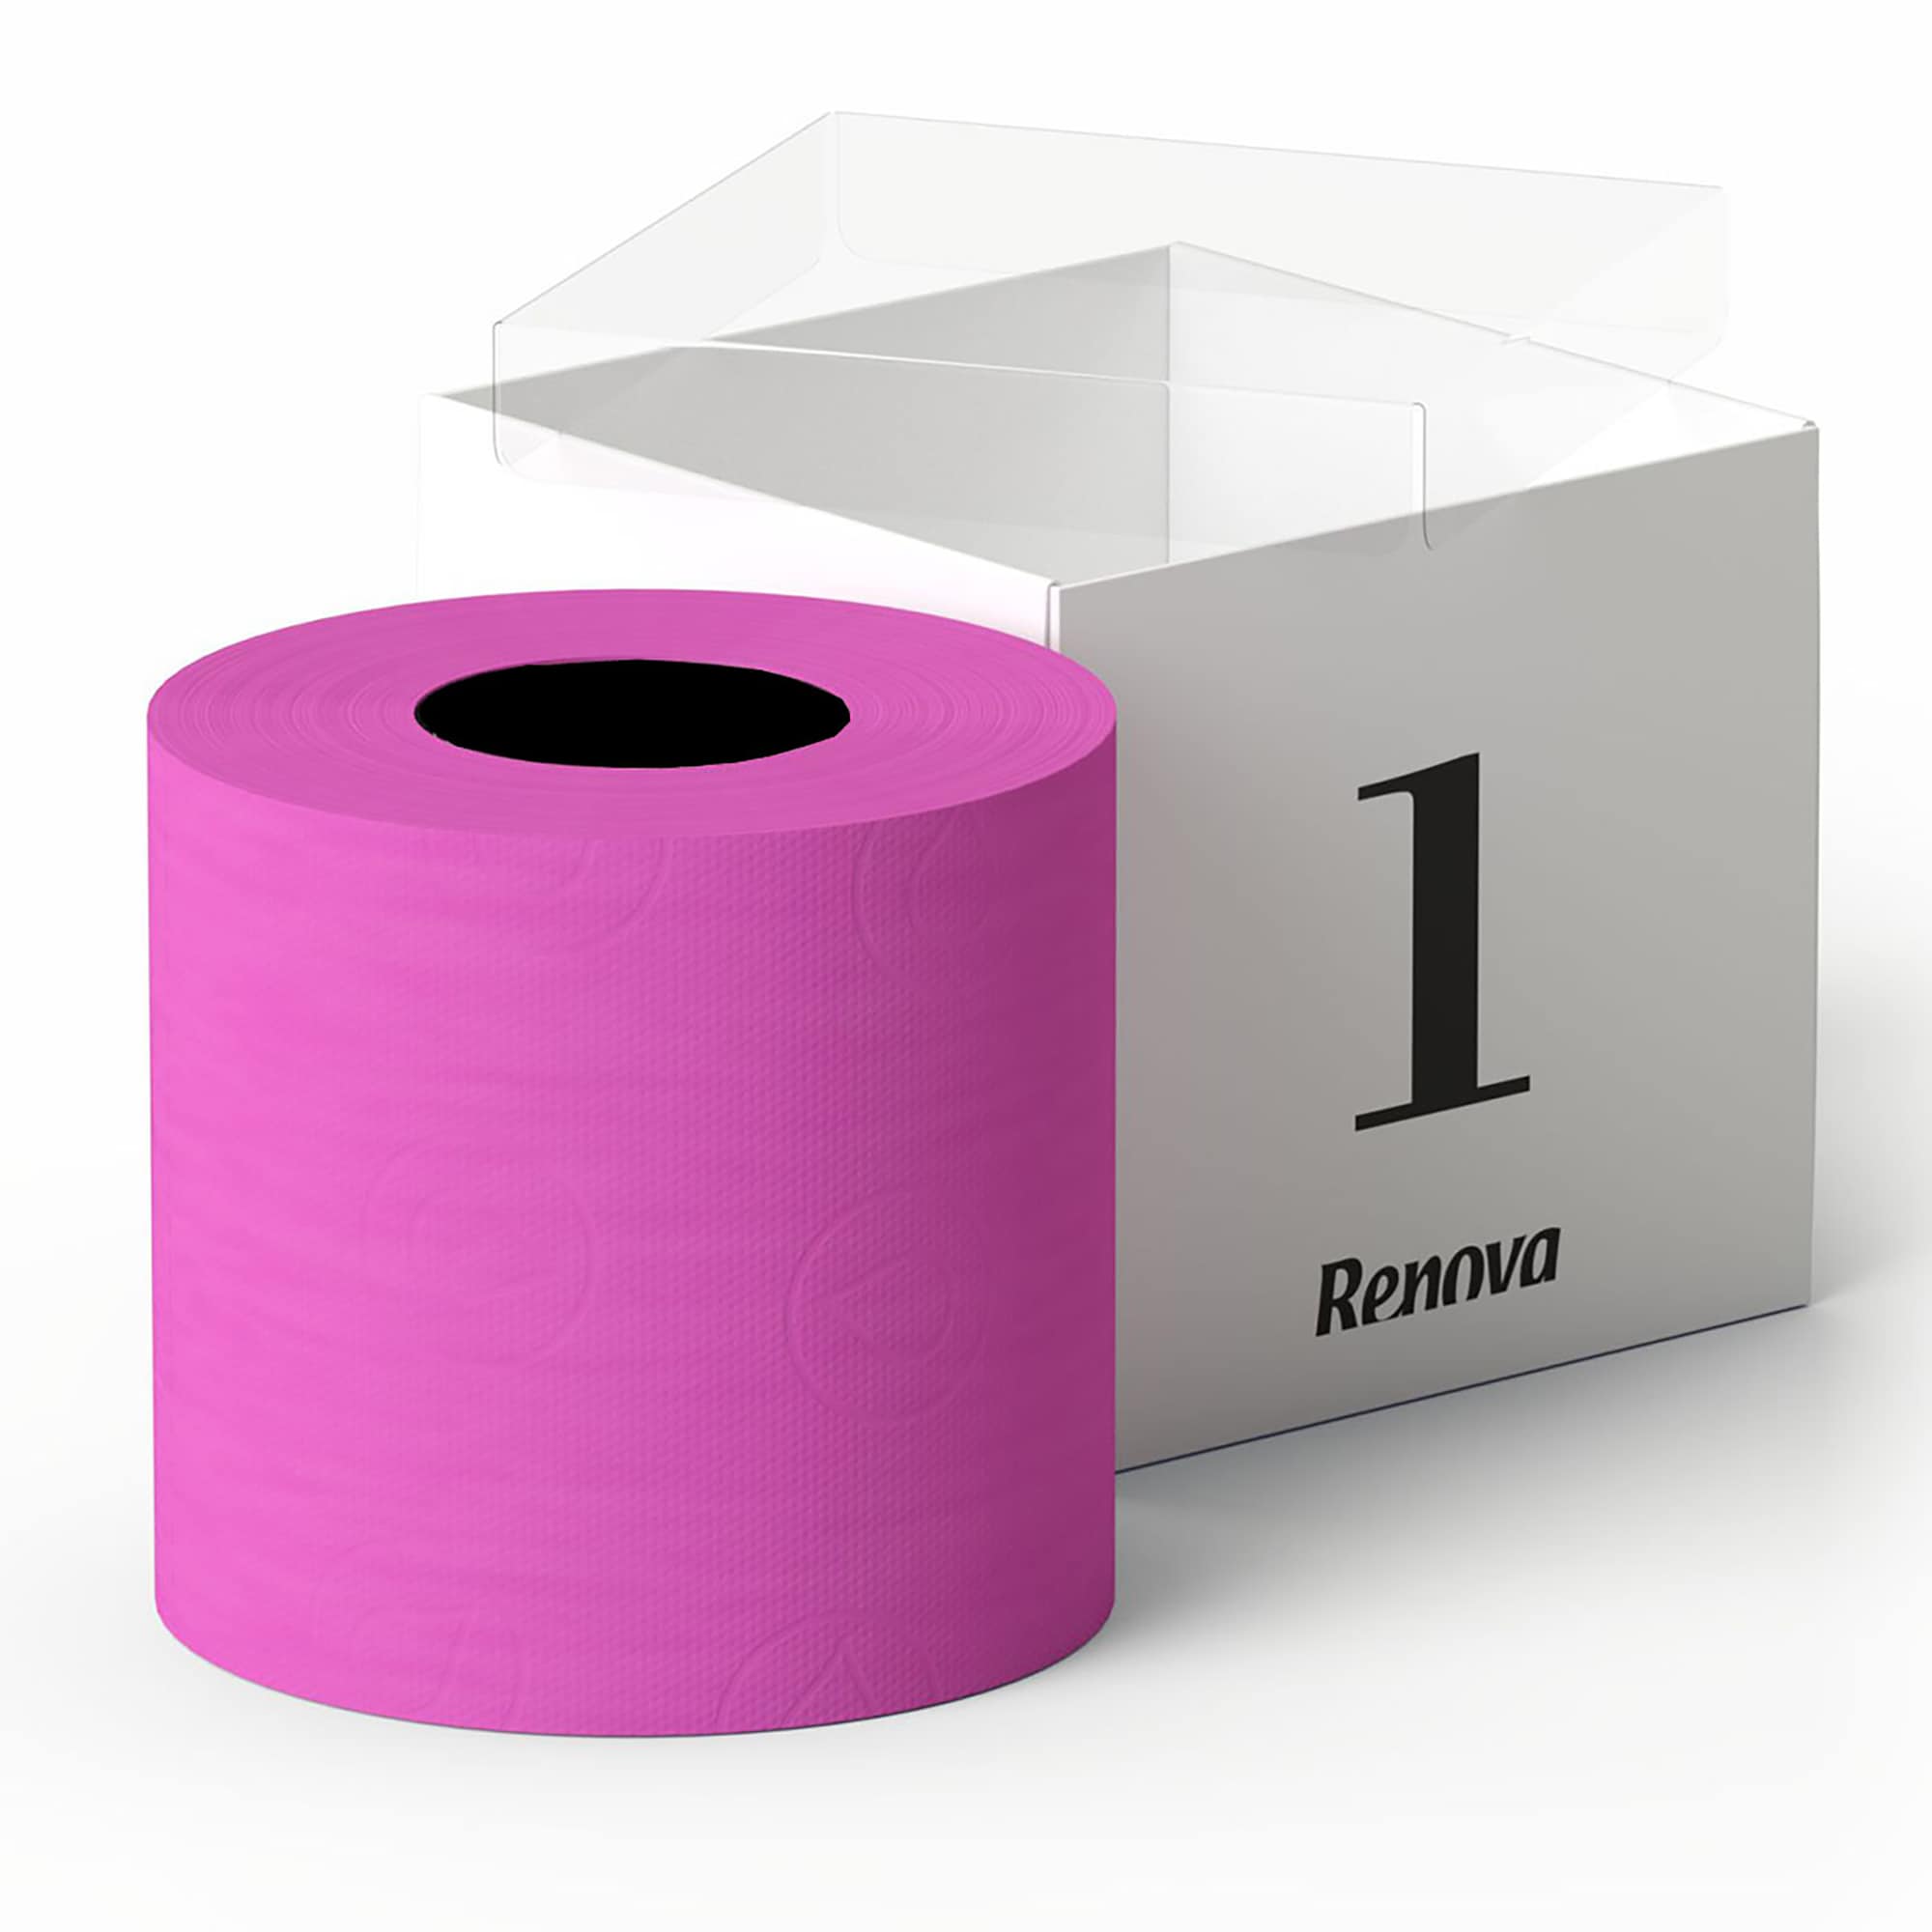 Розовая туалетная бумага. Туалетная бумага Софитель. Бумага новинка. Renova colored Toilet paper Box.